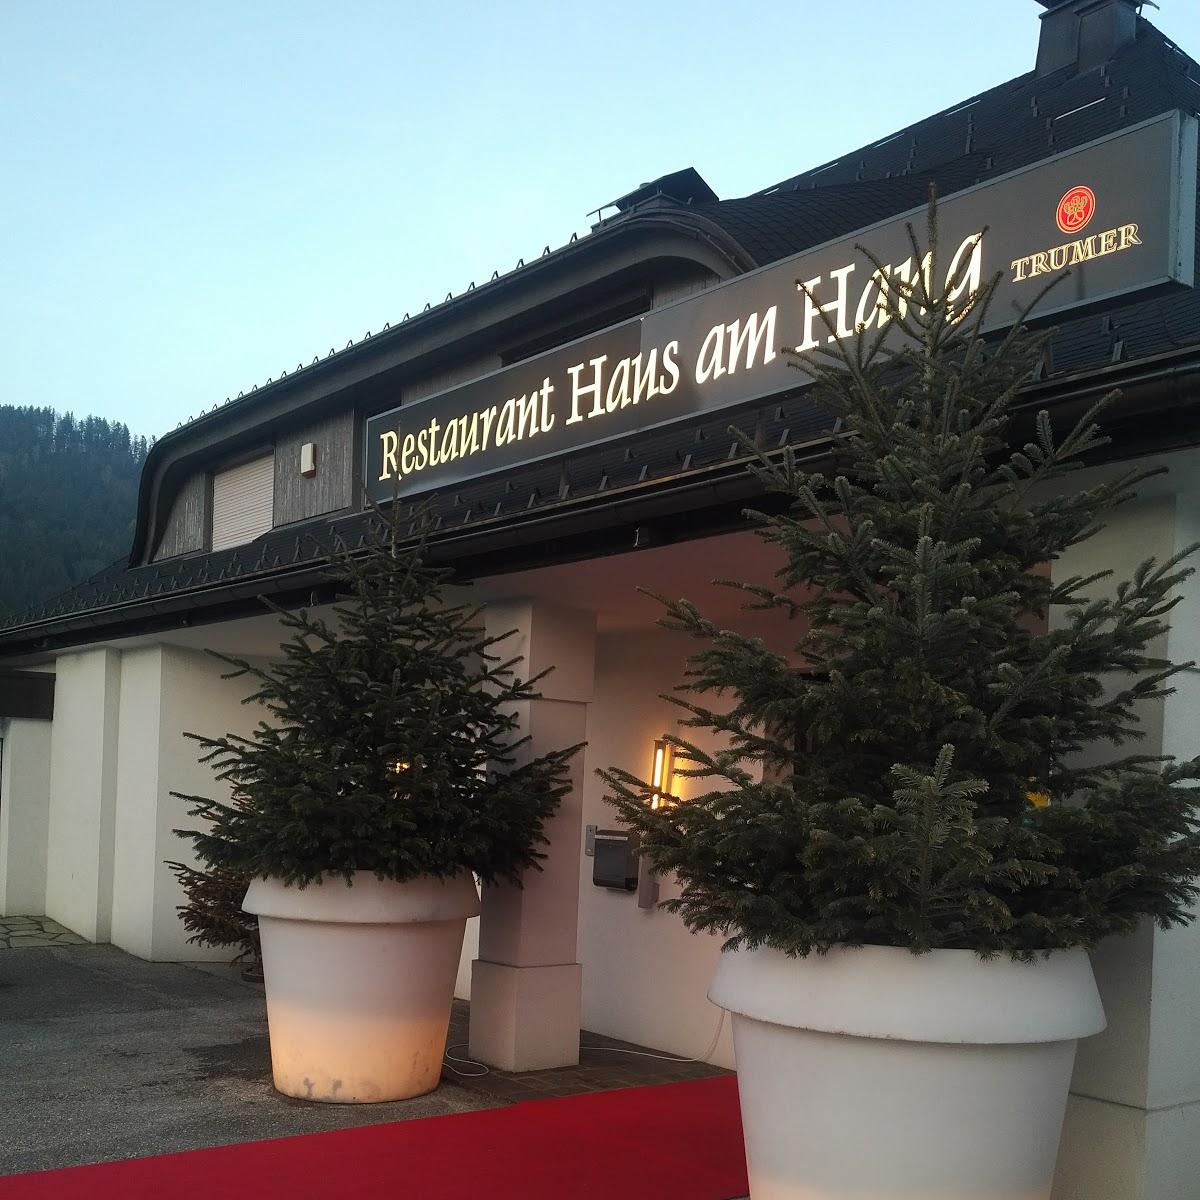 Restaurant "Haus am Hang" in Sankt Gilgen